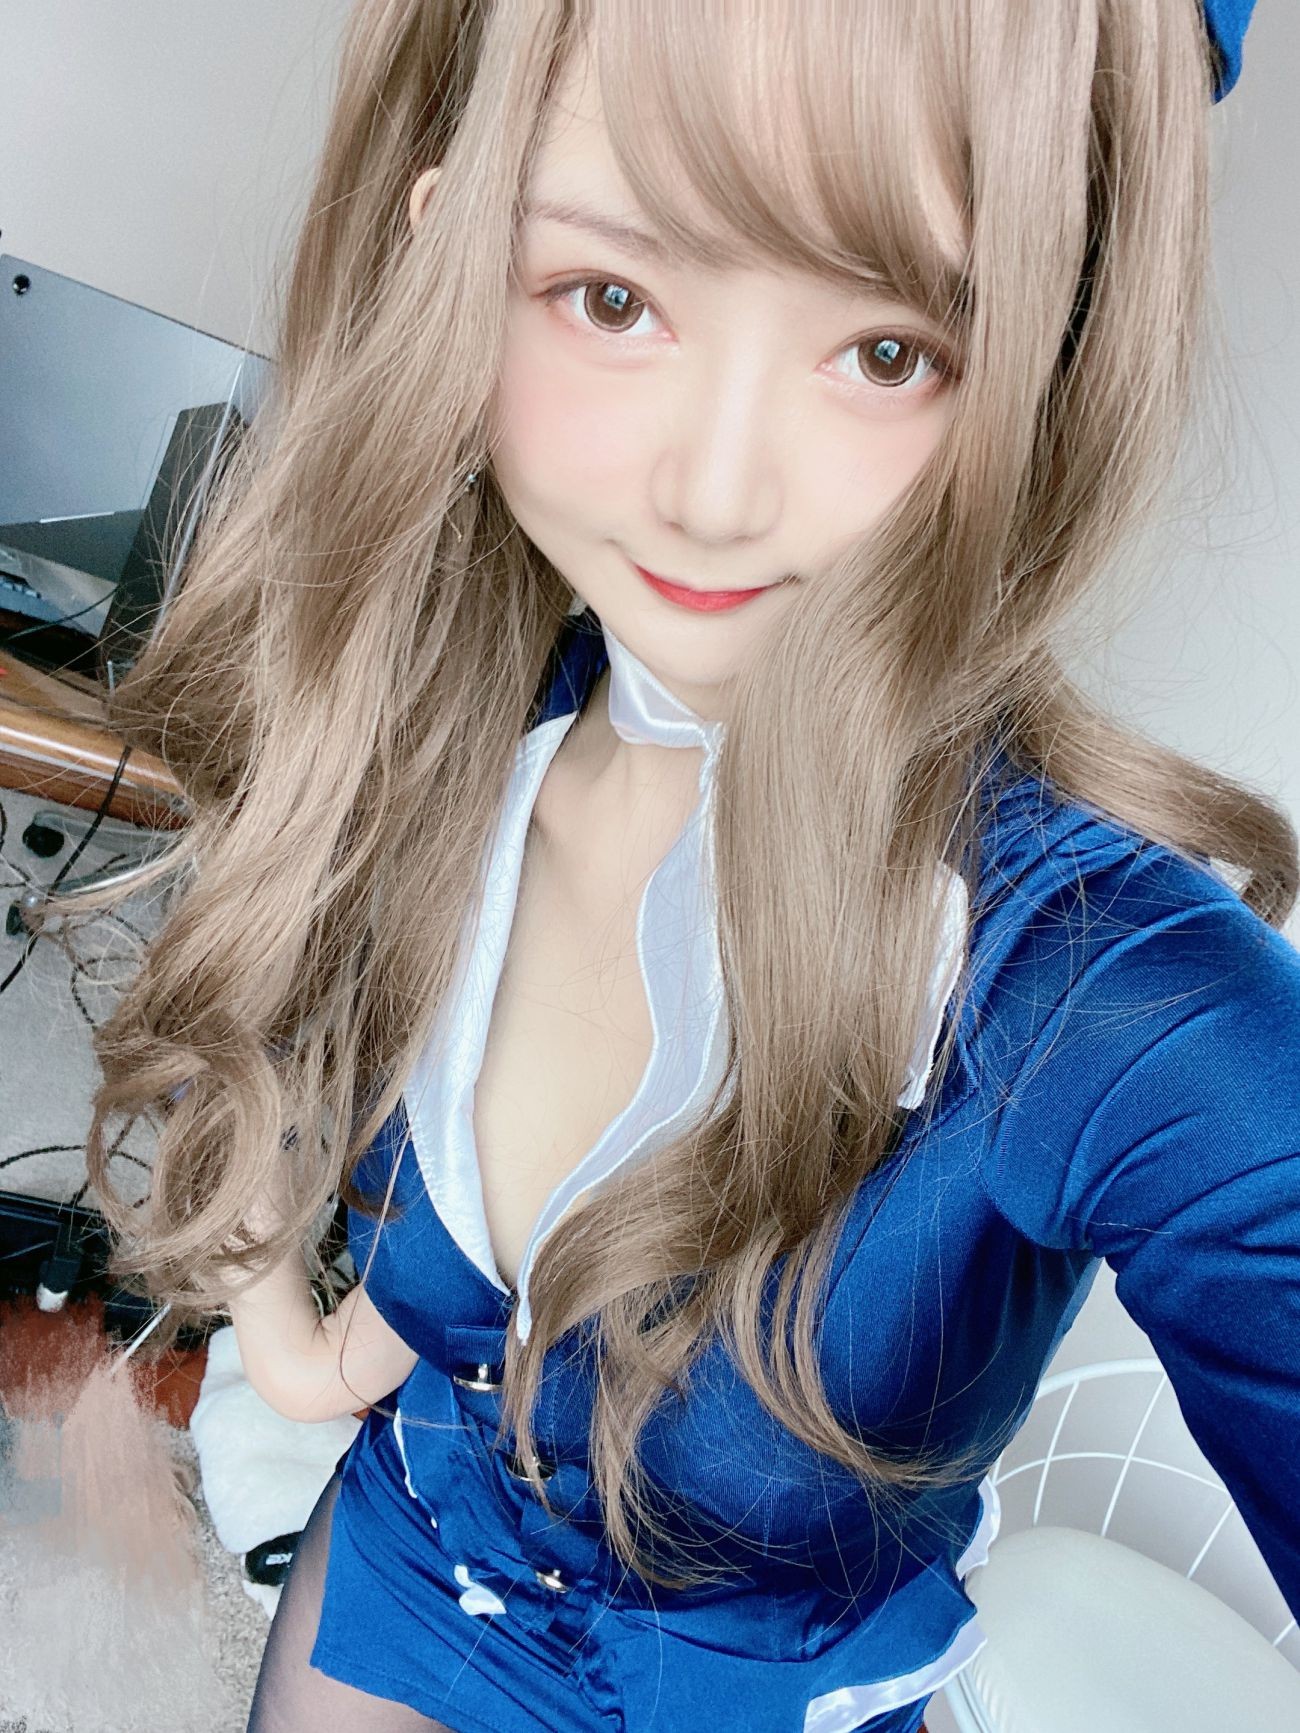 微博美少女51酱性感写真蓝色制服装 (12)